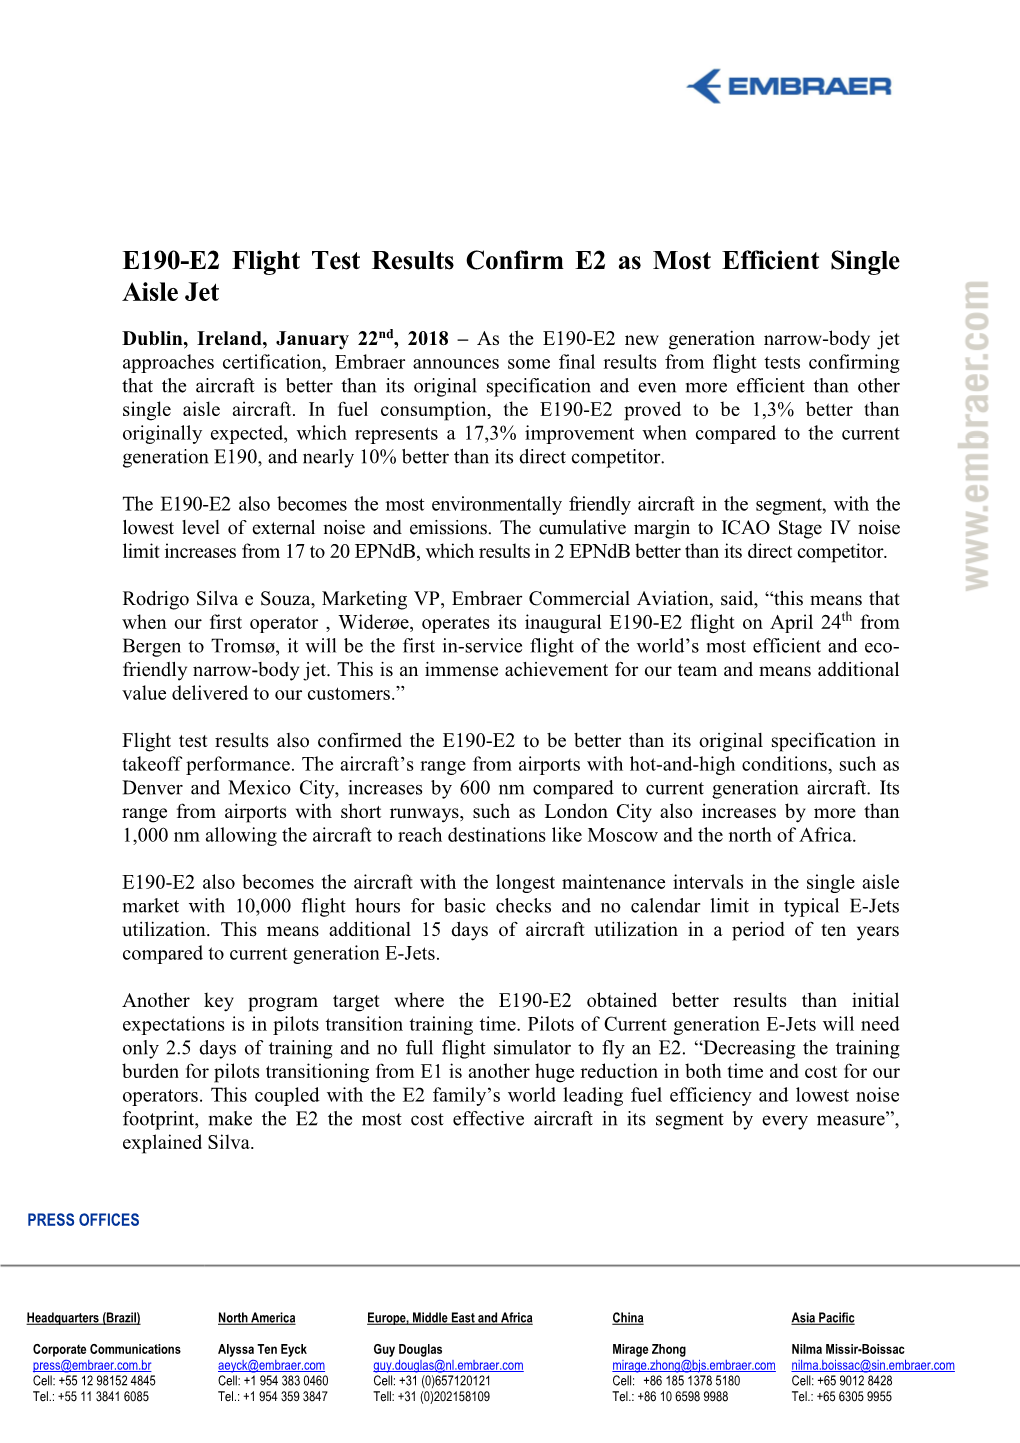 E190-E2 Flight Test Results Confirm E2 As Most Efficient Single Aisle Jet